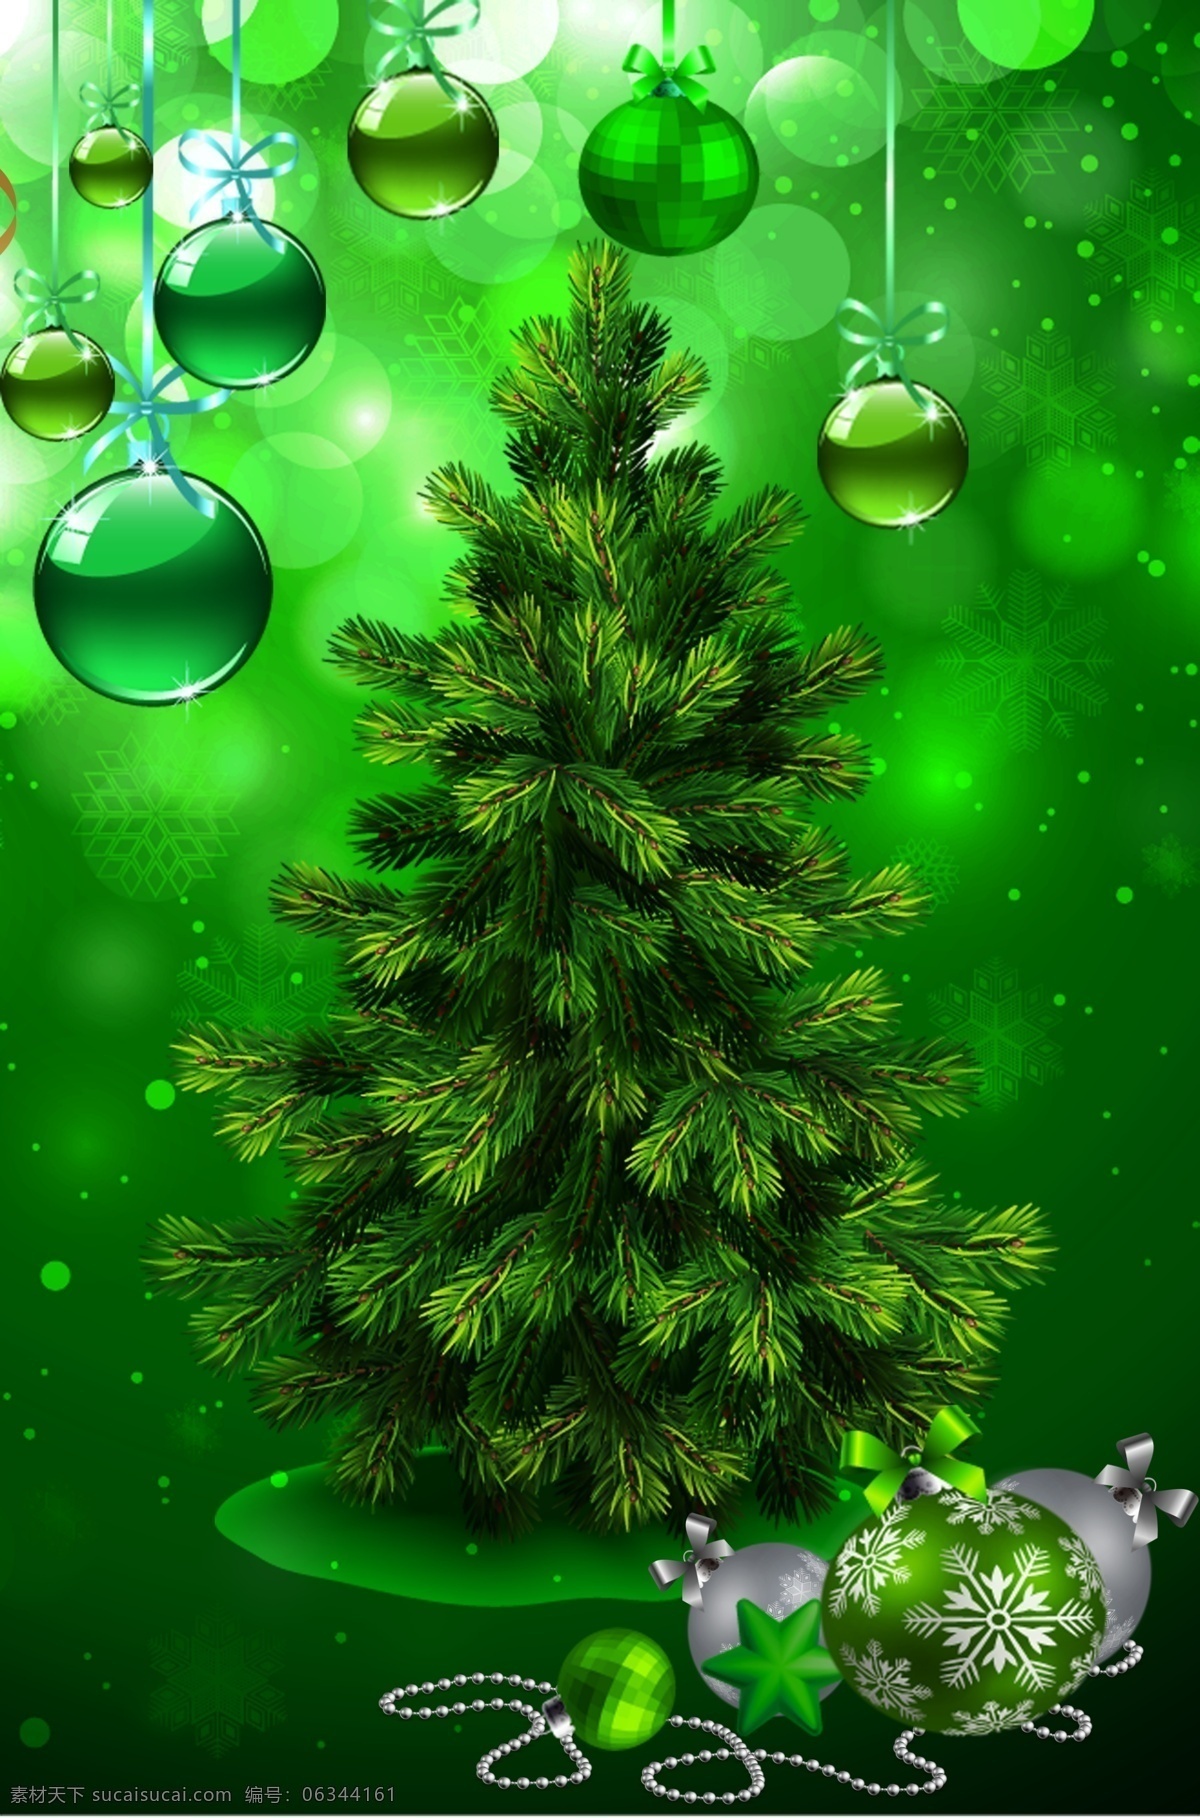 圣诞节 绿色海报设计 绿色植物 圣诞球 圣诞树 松树 圣诞节气氛 原创设计 原创淘宝设计